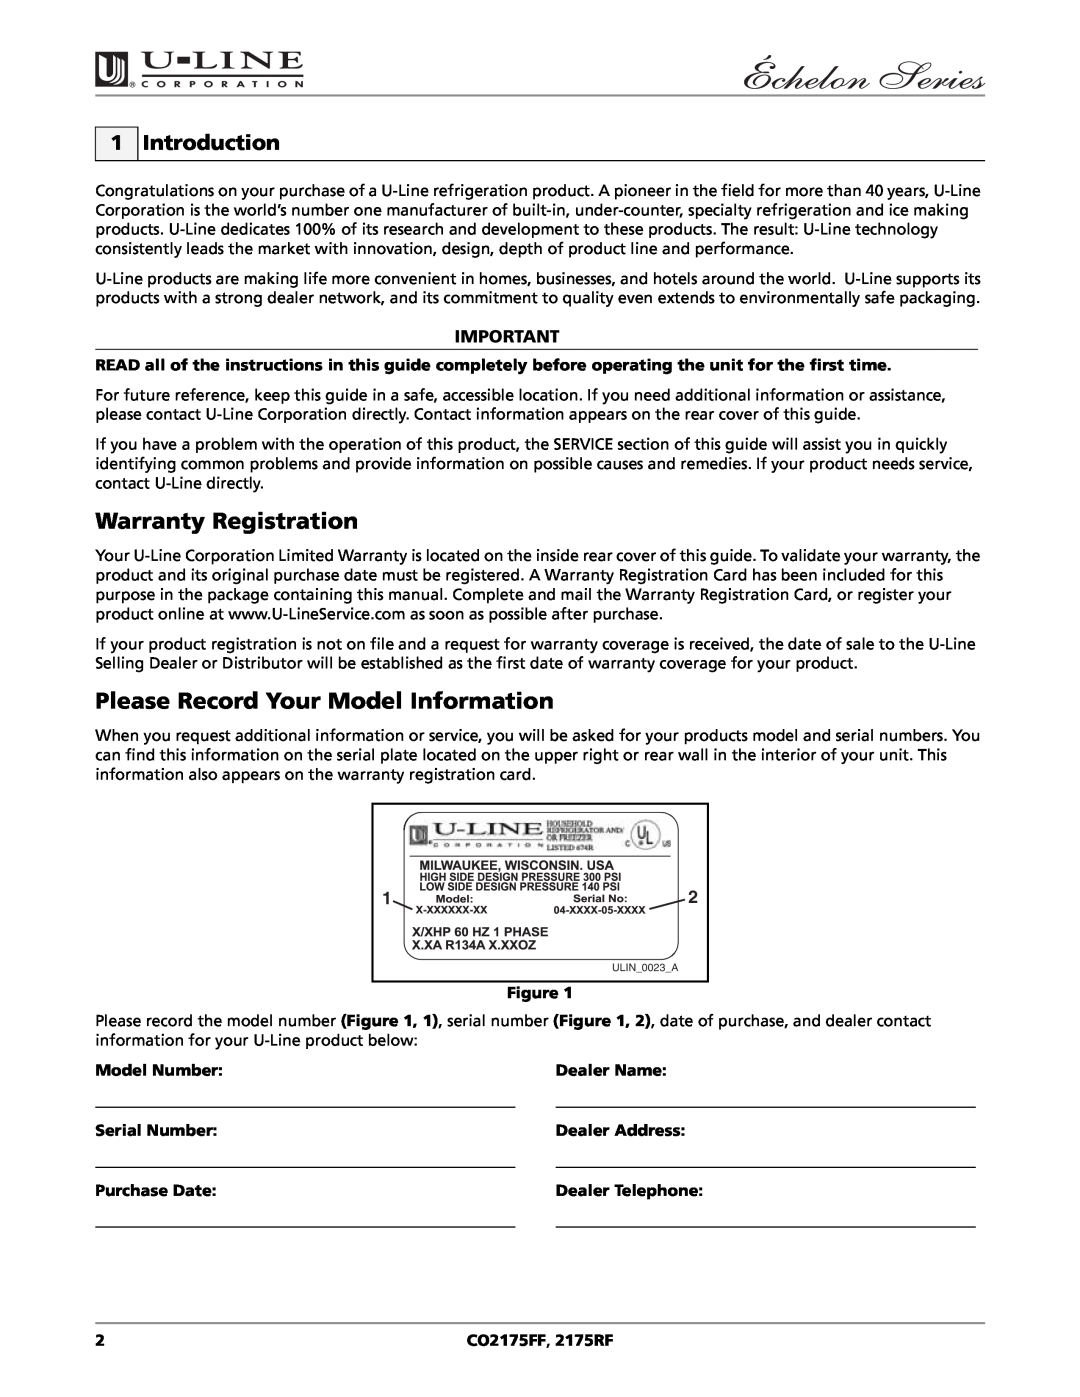 U-Line CO2175FF manual Warranty Registration, Please Record Your Model Information, Introduction, Model Number, Dealer Name 